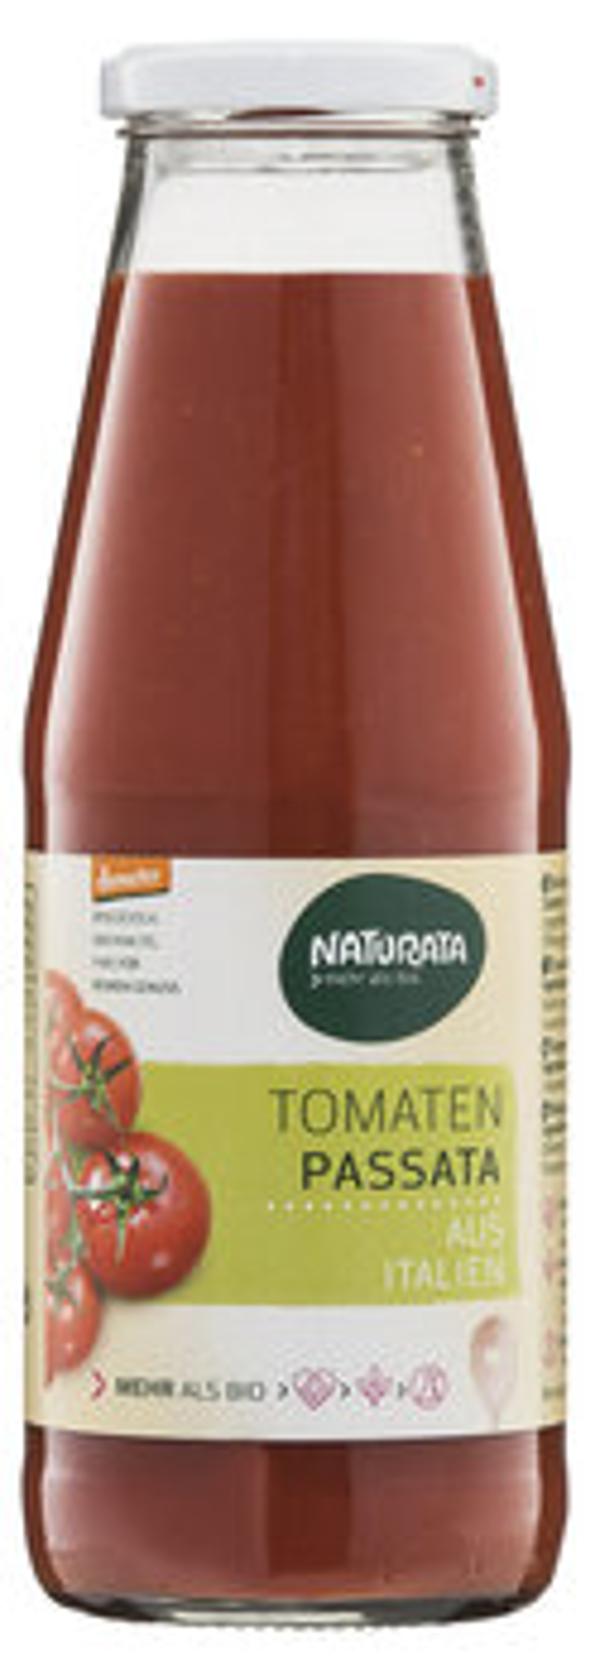 Produktfoto zu Tomaten Passata, 700g